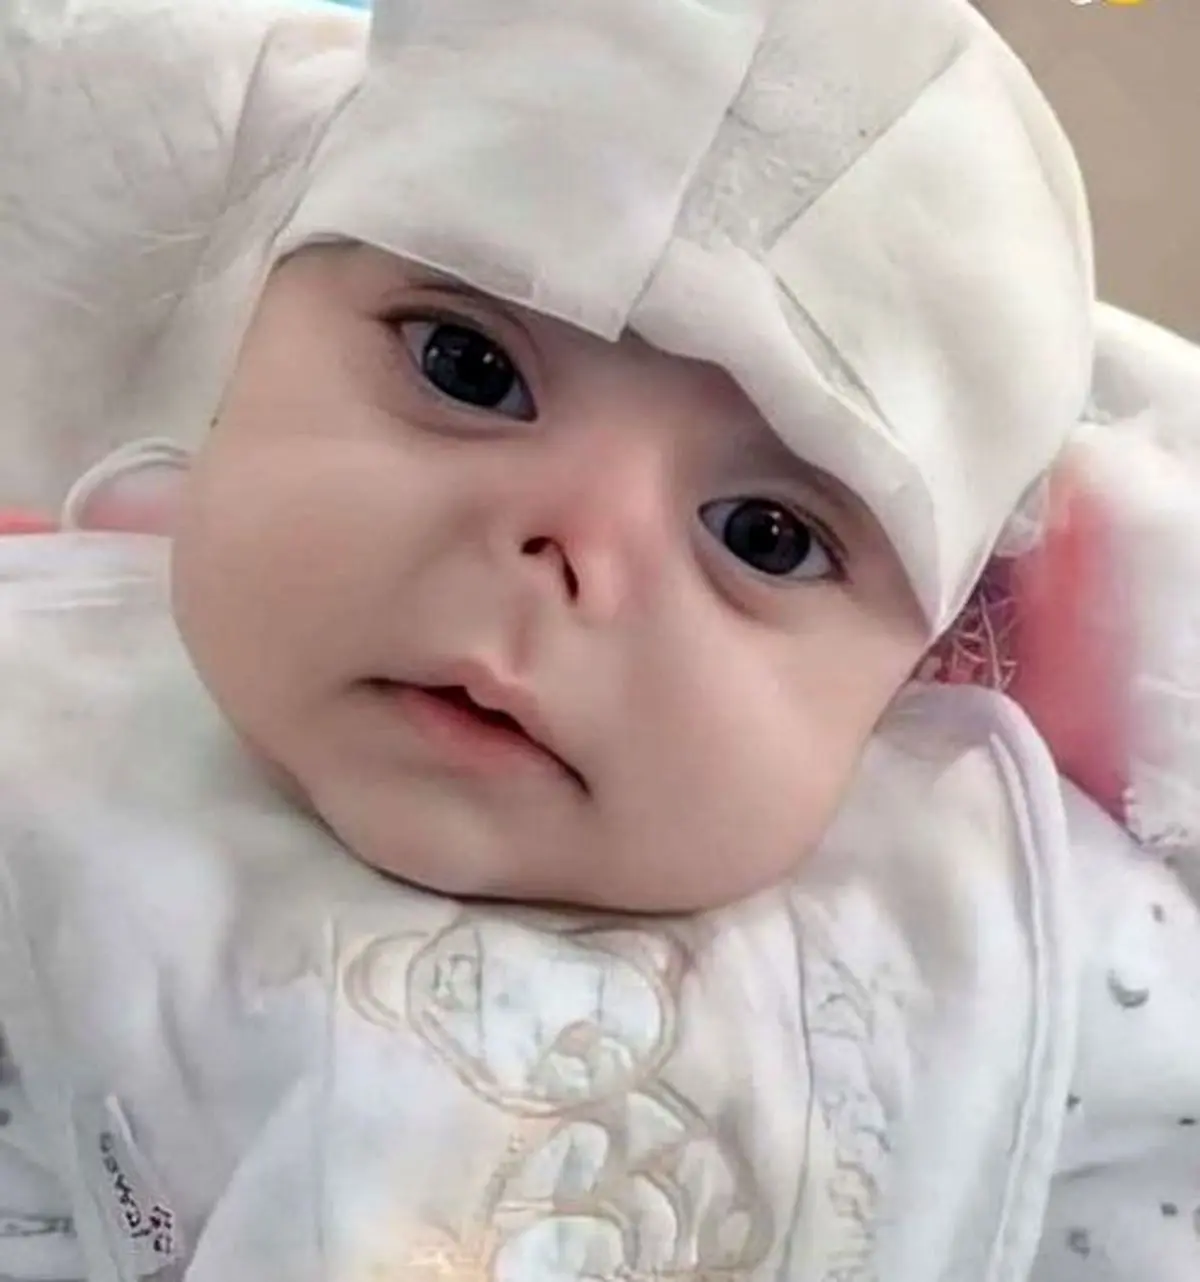 موش دماغ این نوزاد زیبا را خوردند!+عکس دلخراش